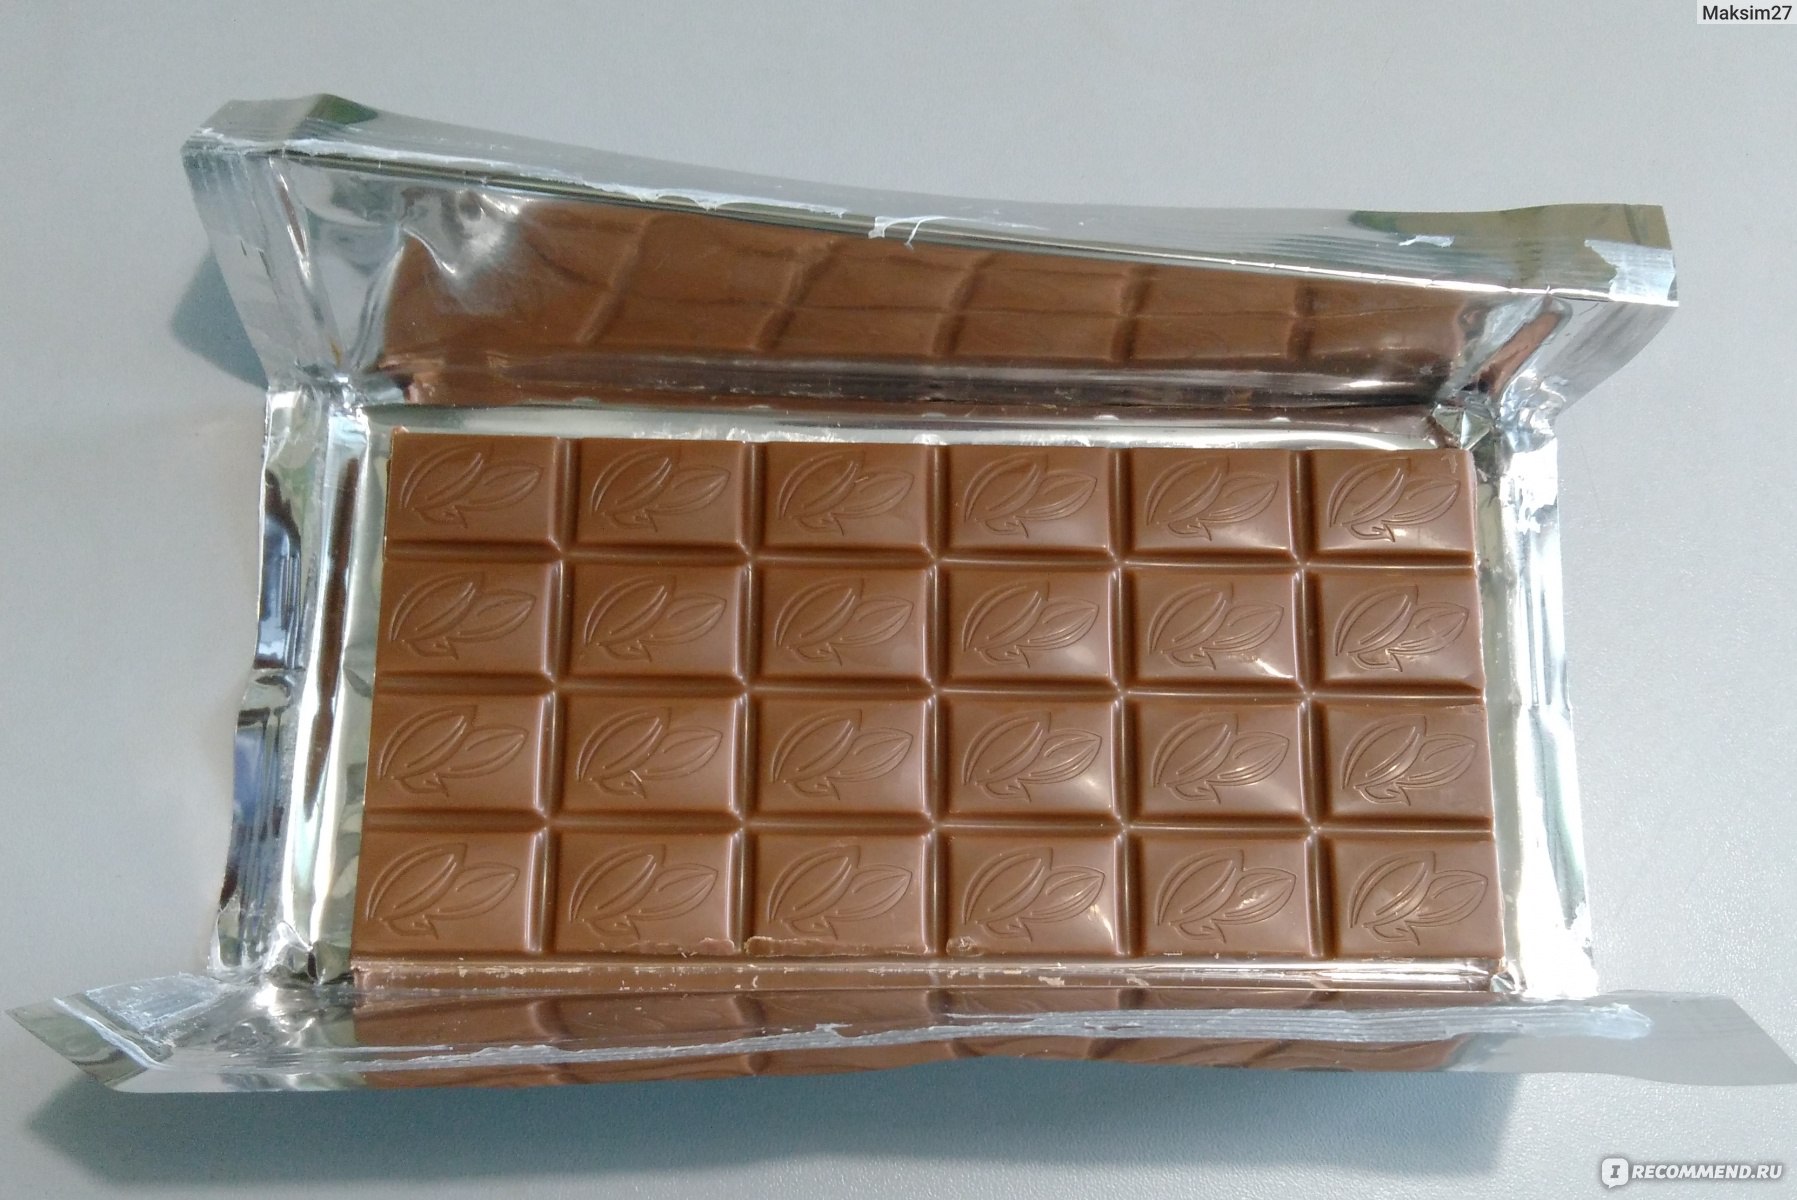 Шоколадка имеет длину 25. Дешевый шоколад. Самый дешевый шоколад. Вкусные и недорогие шоколадки. Палетка в виде шоколадки.